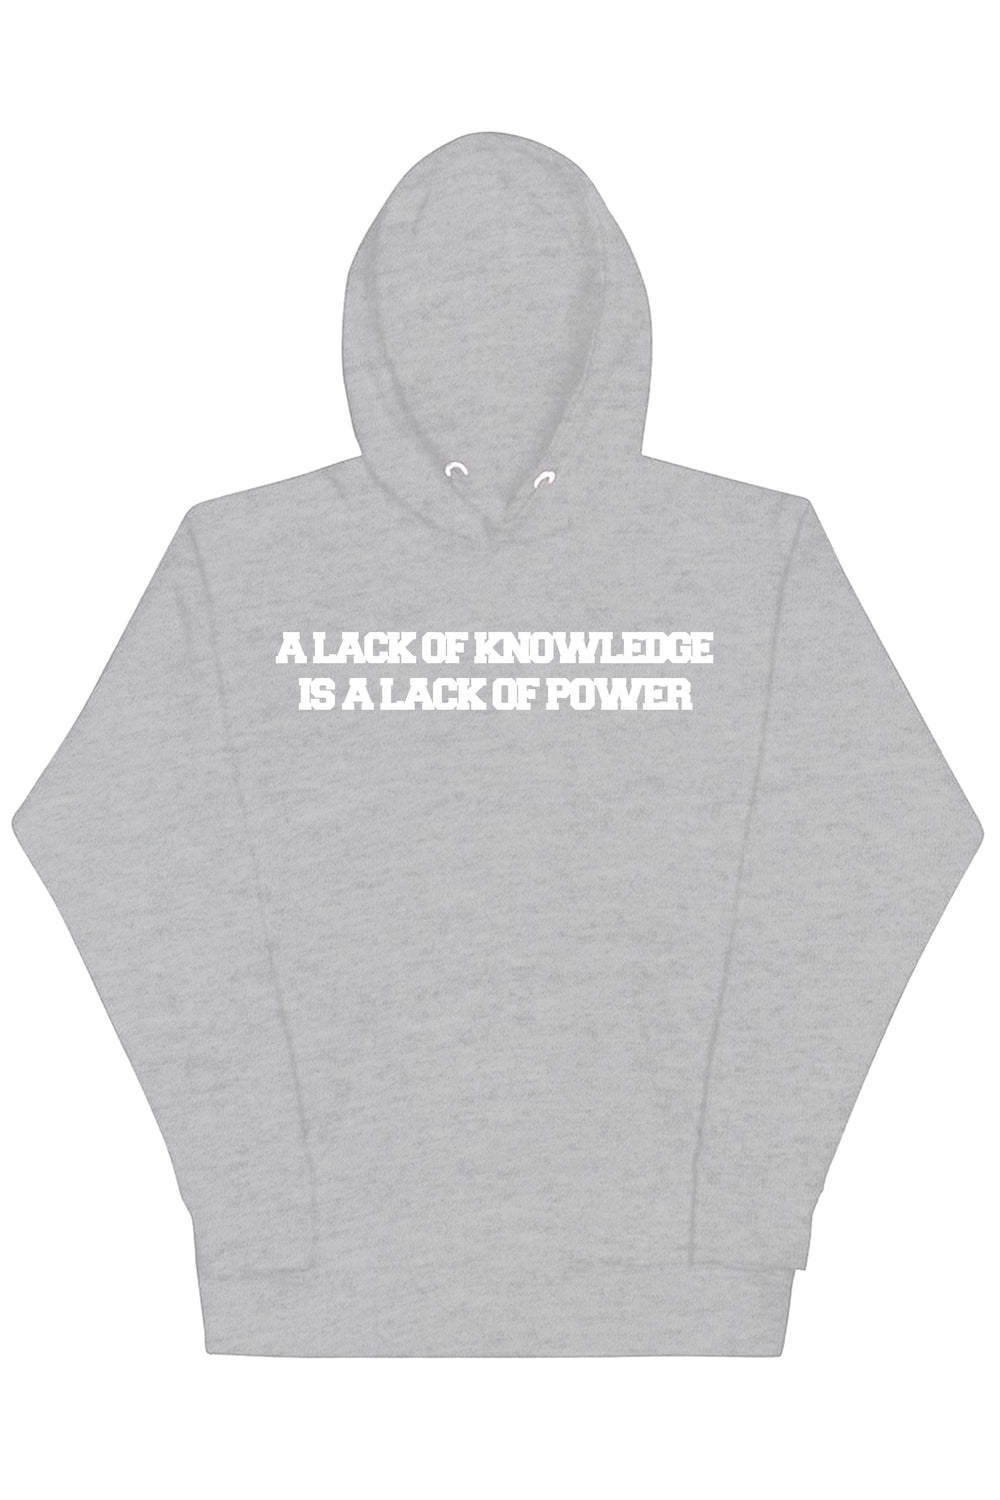 Knowledge & Power Hoodie (White Logo) - Zamage